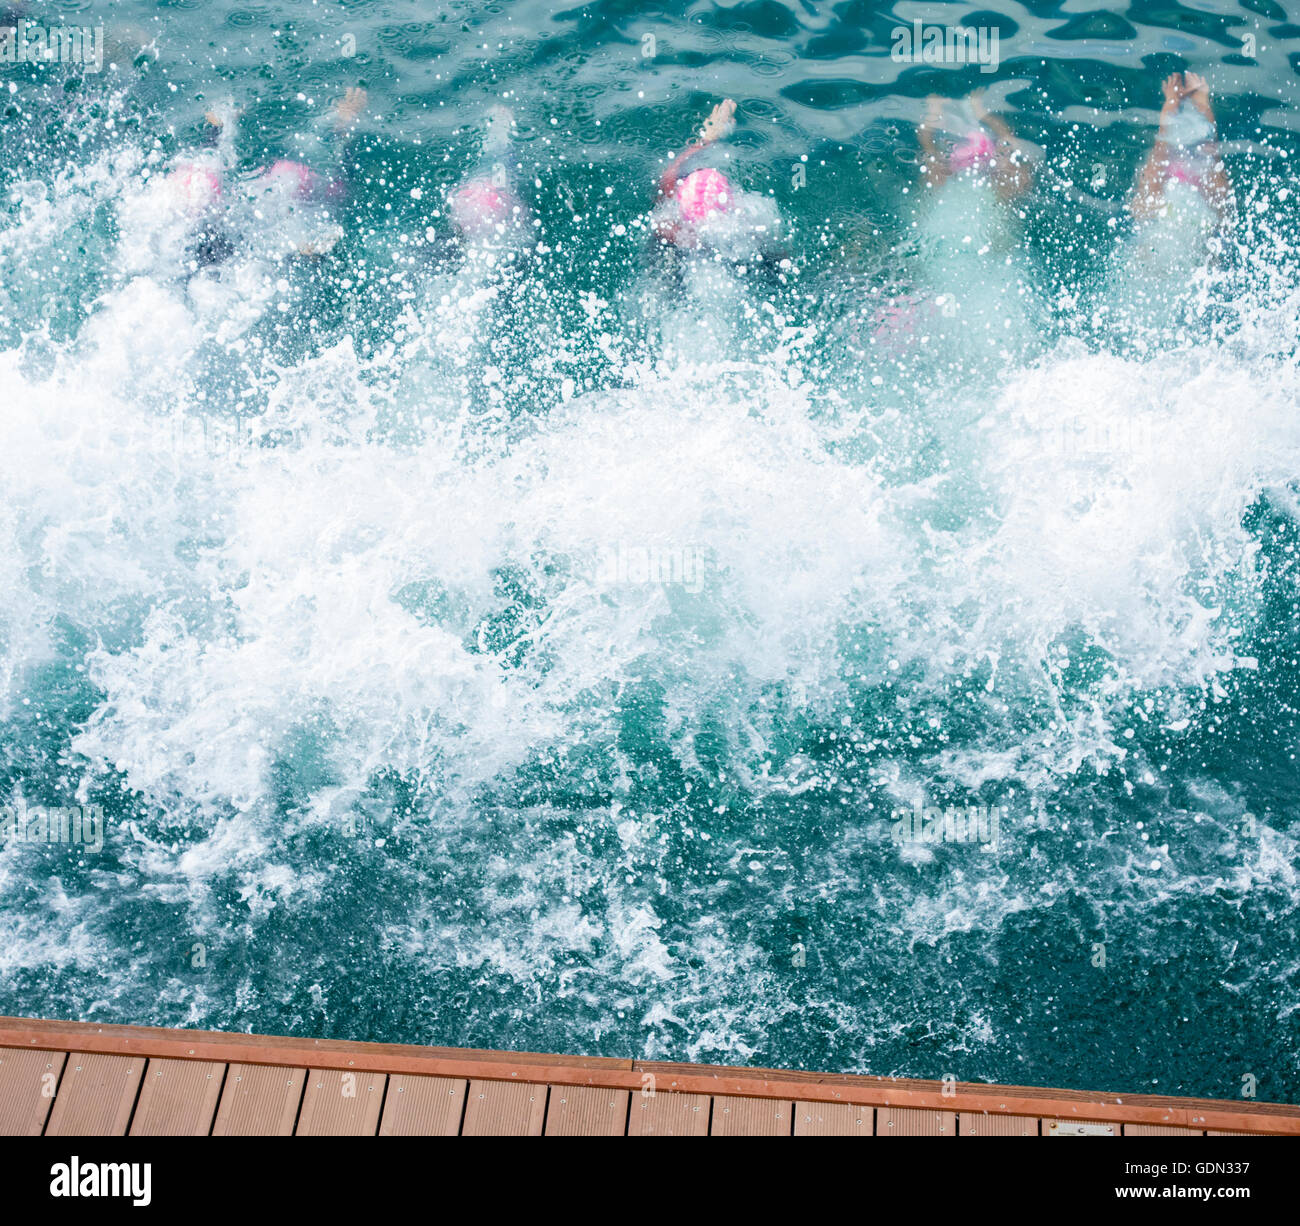 Triathletinnen Tauchen in Meer zu Beginn der Triathlon-Rennen. Stockfoto